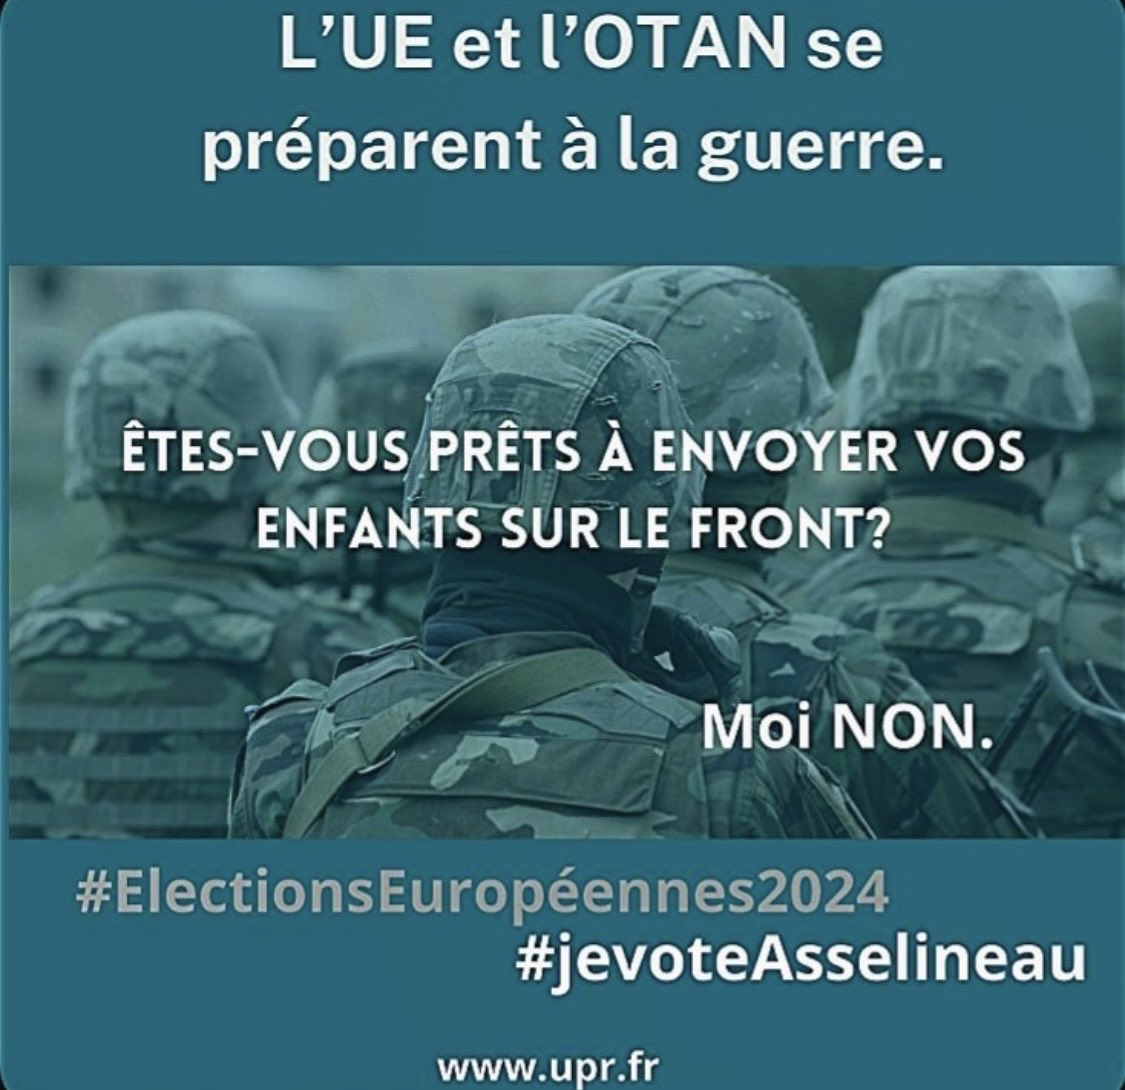 #jevoteAsselineau